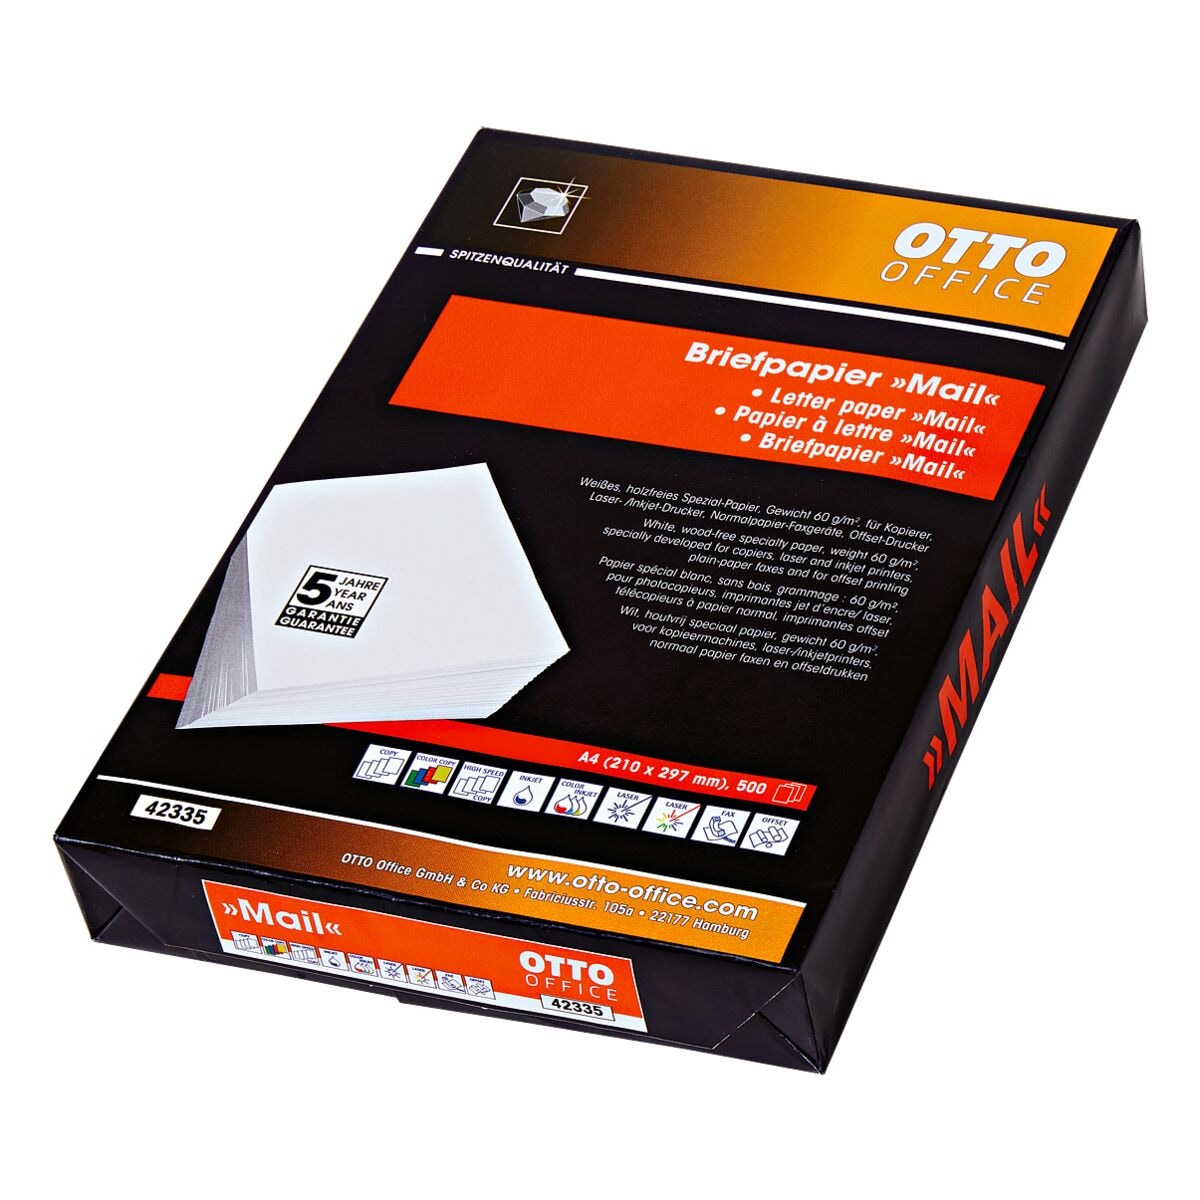 Multifunktionales Briefpapier A4 OTTO Office Premium MAIL - 500 Blatt gesamt, 60g/qm